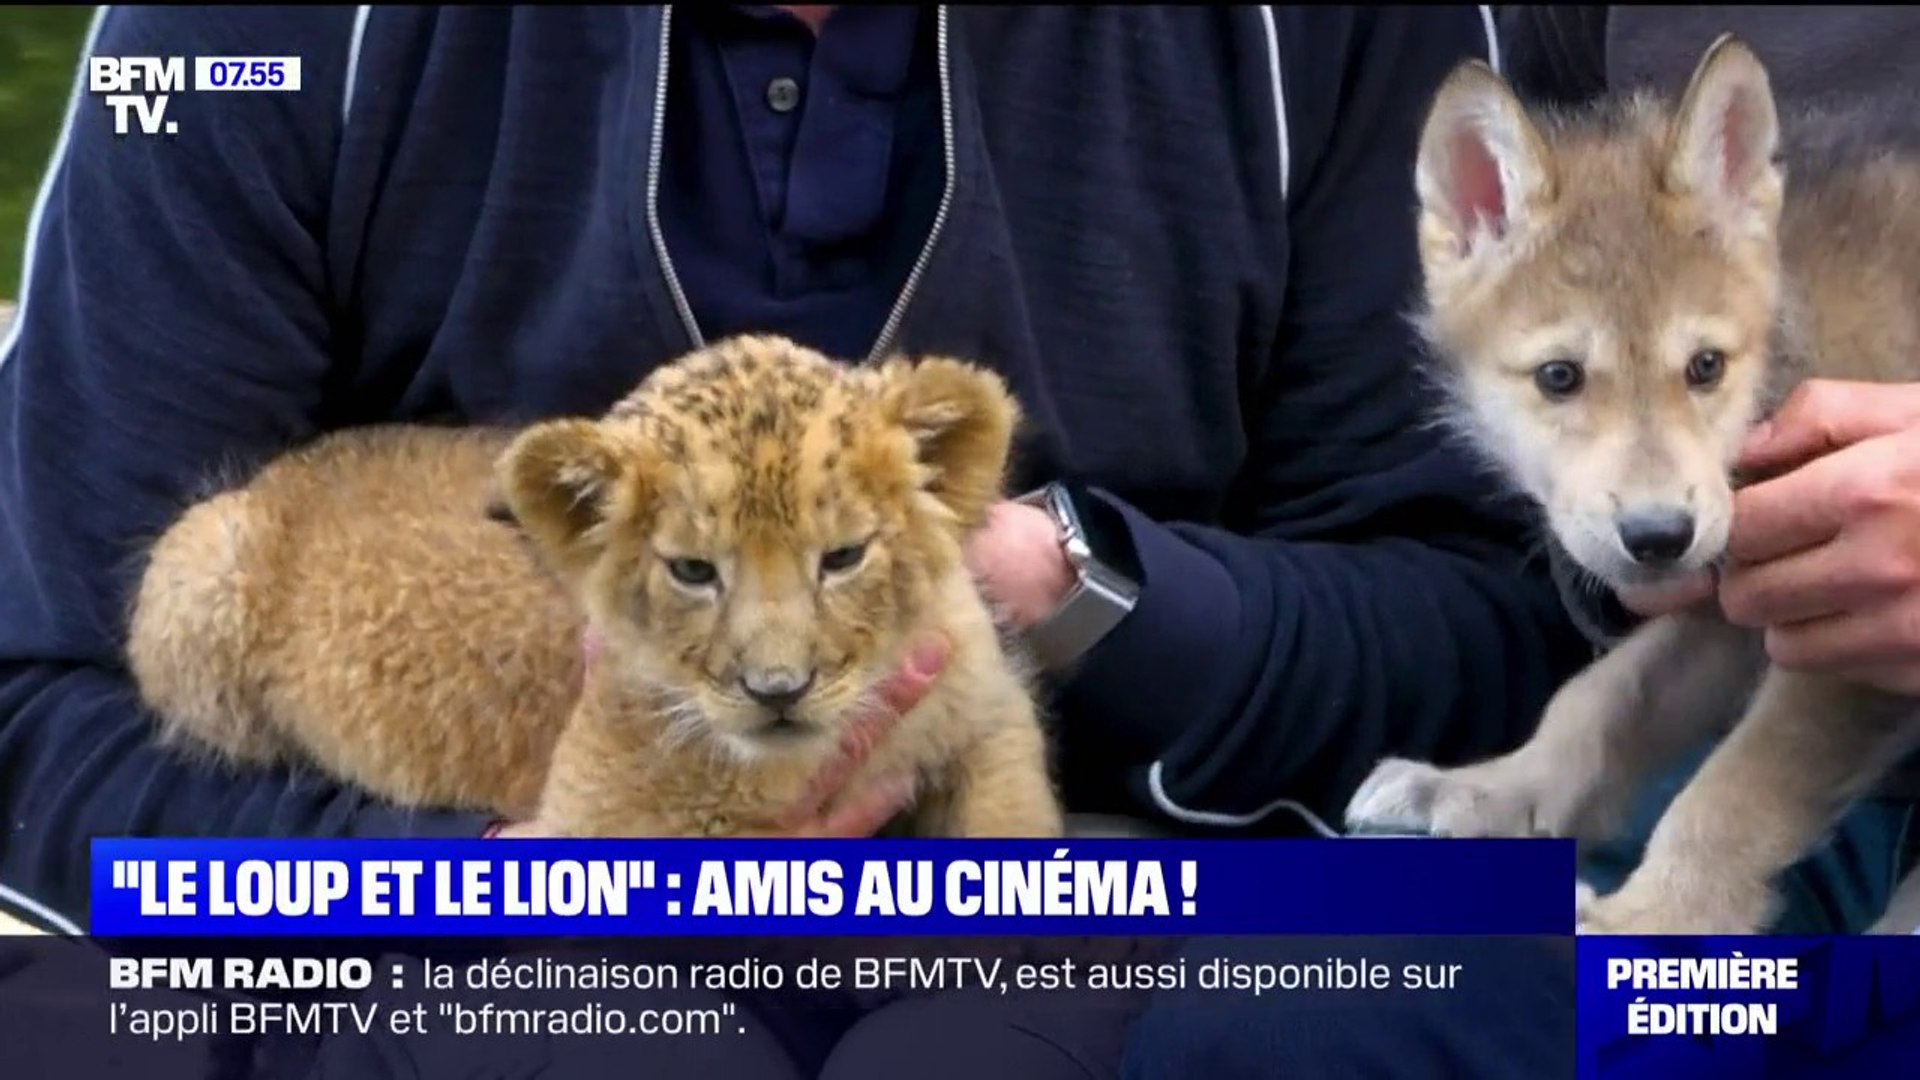 Le loup et le lion", cette histoire d'amitié inattendue entre deux animaux,  au cinéma ce mercredi - Vidéo Dailymotion